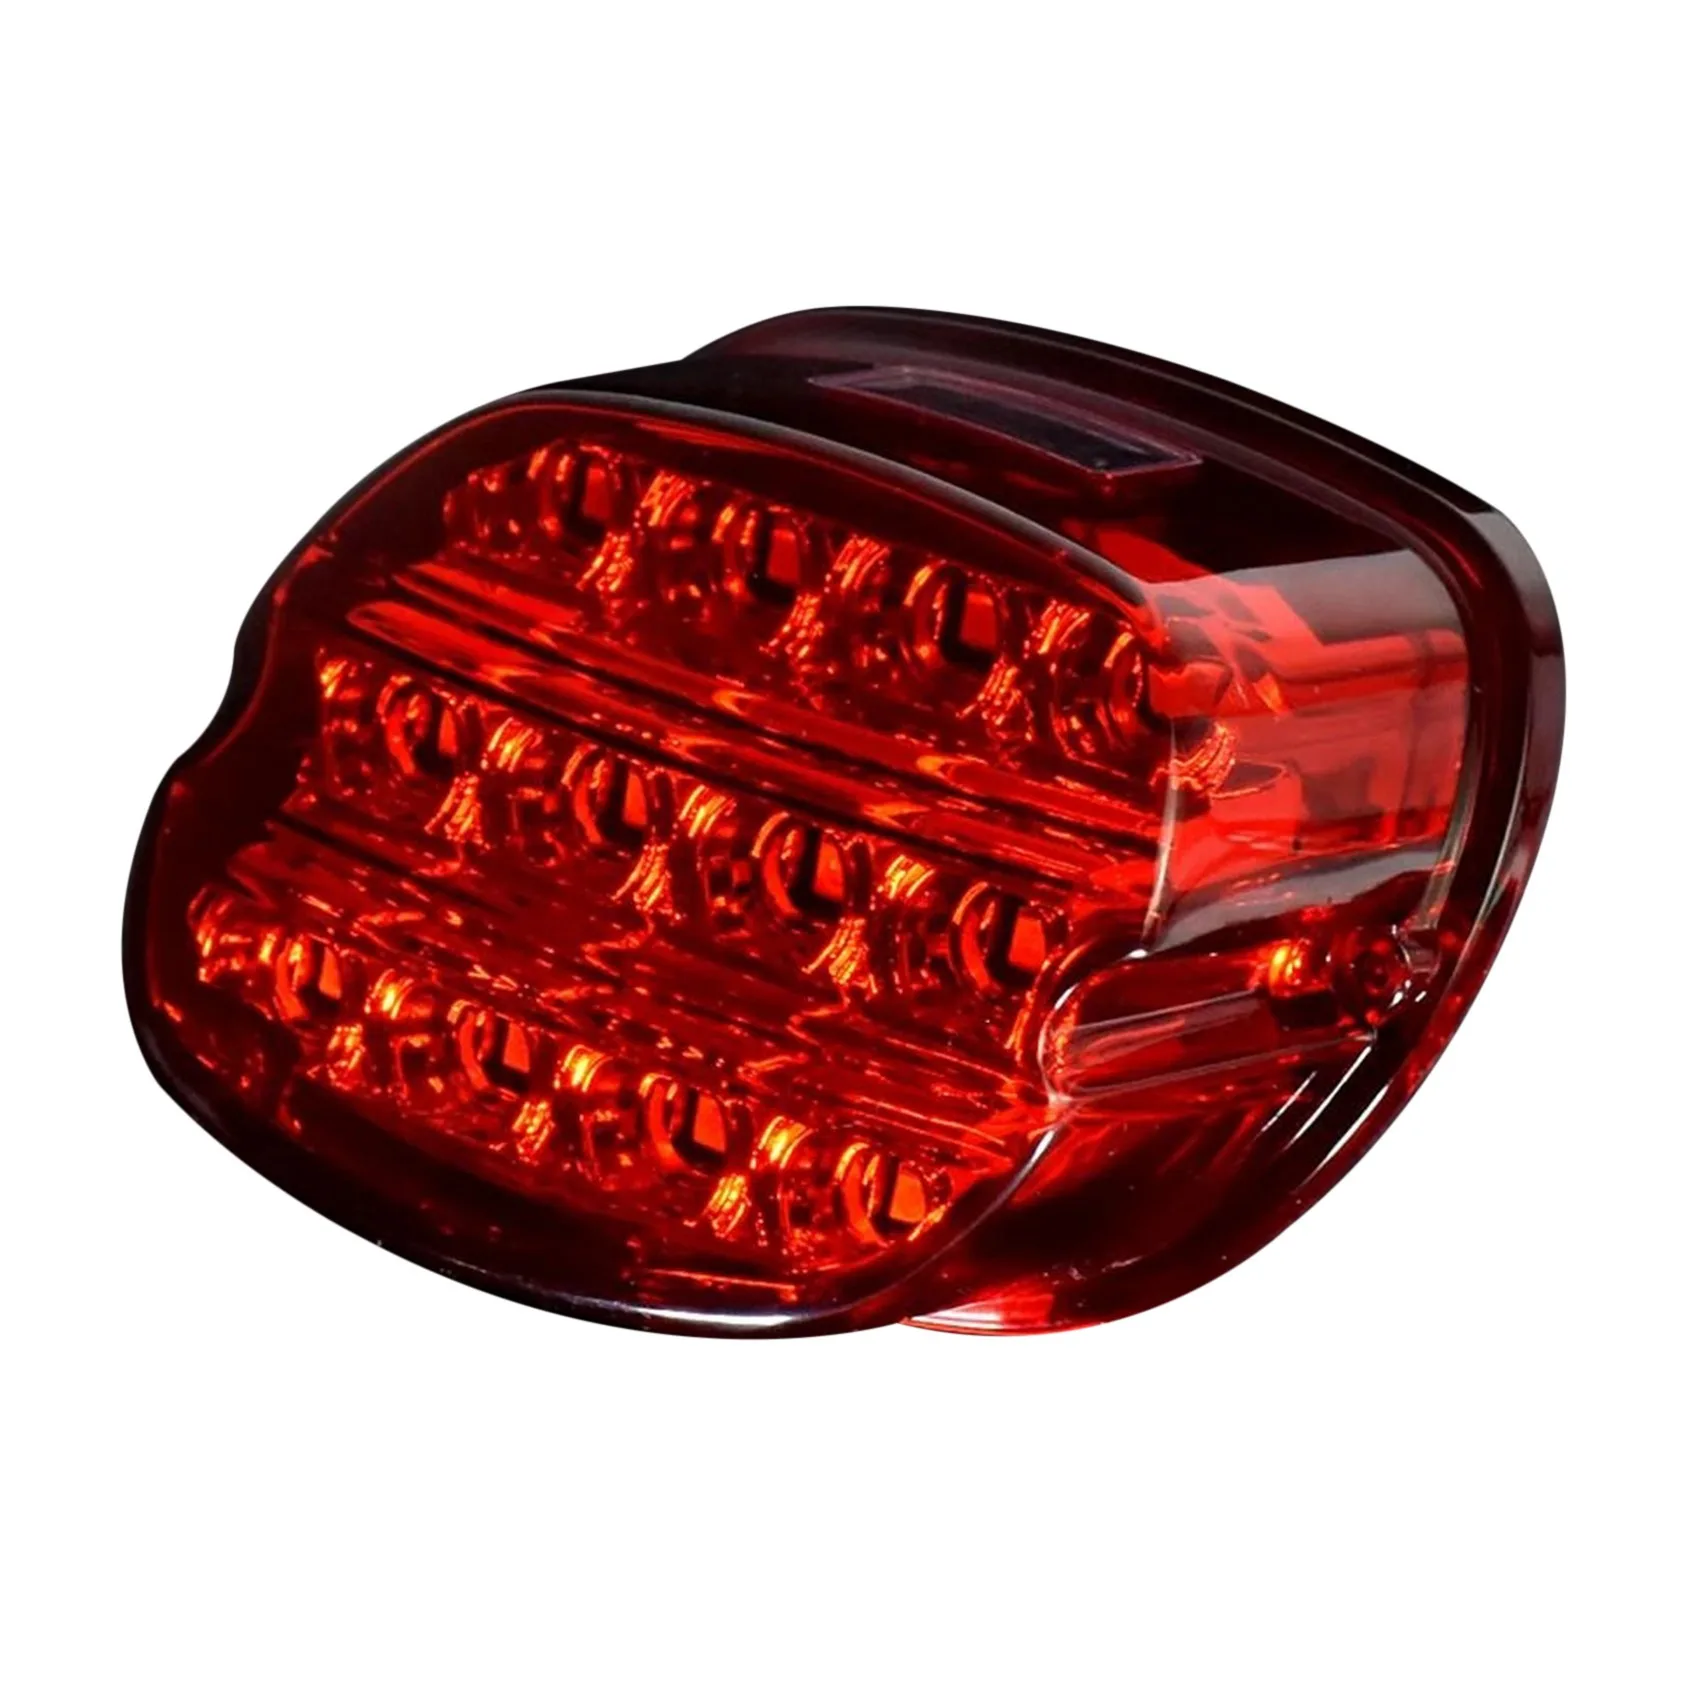 

Motorcycle 12V LED Red Housing Brake Tail Light License Plate Tail Light for Glide 883 1200